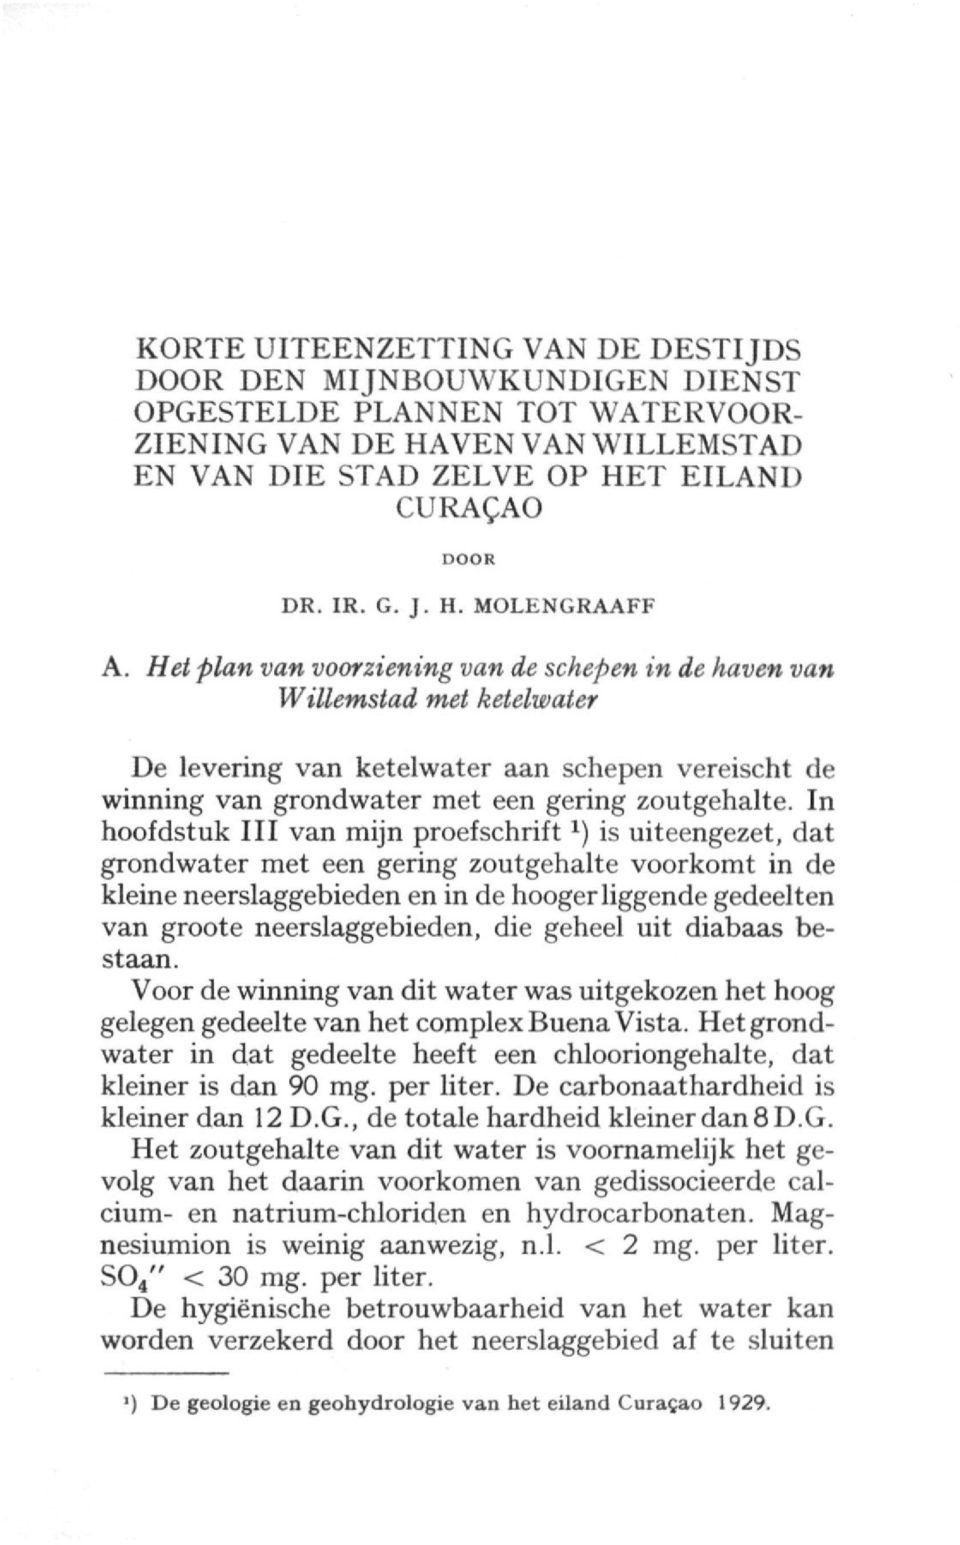 In hoofdstuk III van mijn proefschrift *) is uiteengezet, dat grondwater met een gering zoutgehalte voorkomt in de kleine neerslaggebieden en in de hooger liggende gedeelten van groote